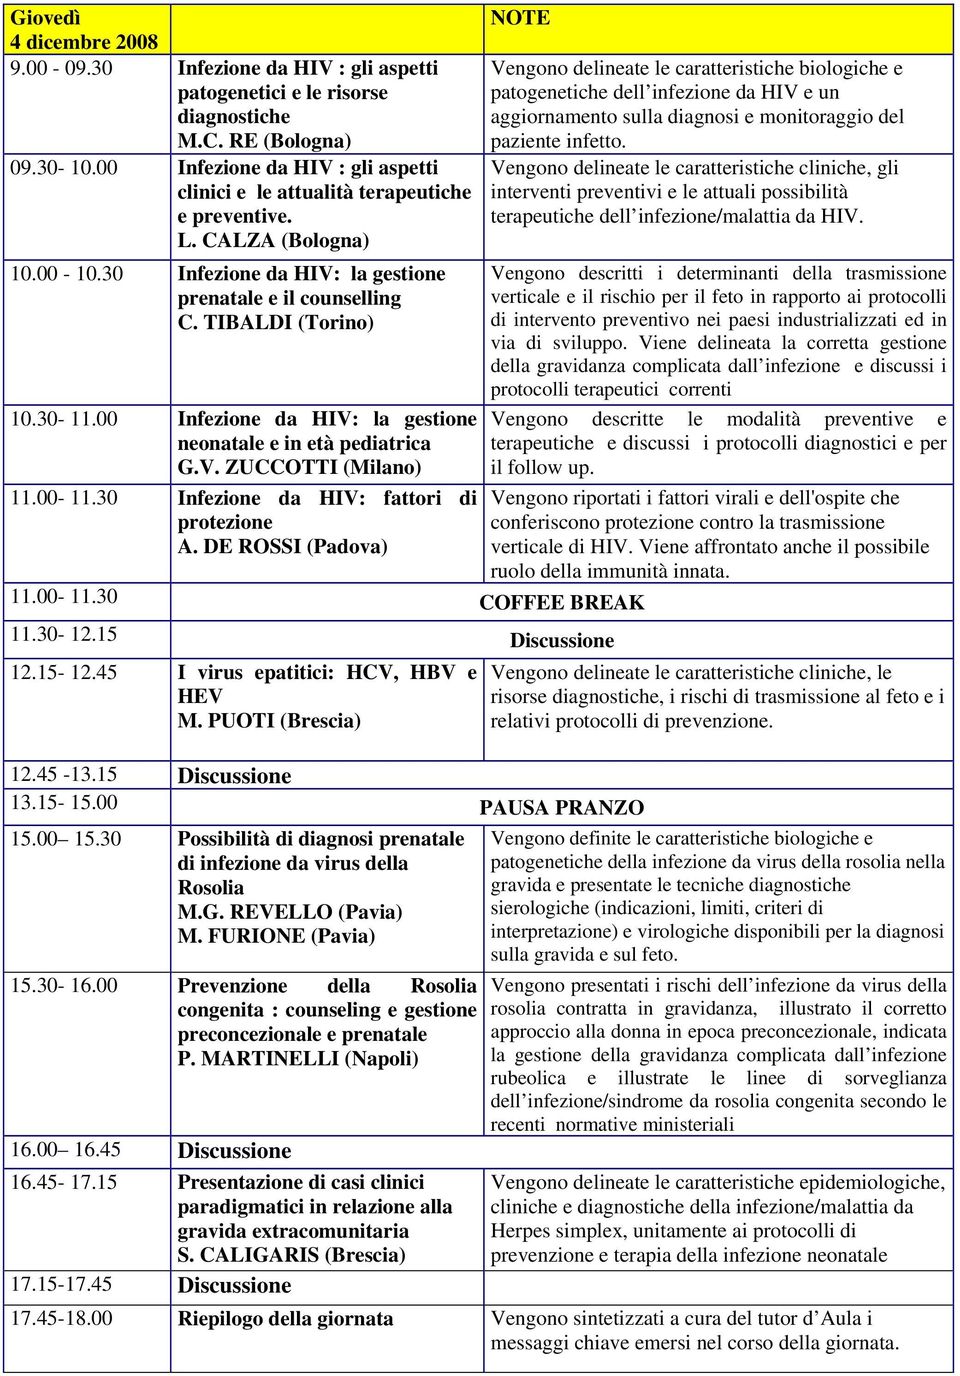 30-11.00 Infezione da HIV: la gestione neonatale e in età pediatrica G.V. ZUCCOTTI (Milano) 11.00-11.30 Infezione da HIV: fattori di protezione A. DE ROSSI (Padova) 11.00-11.30 COFFEE BREAK 11.30-12.